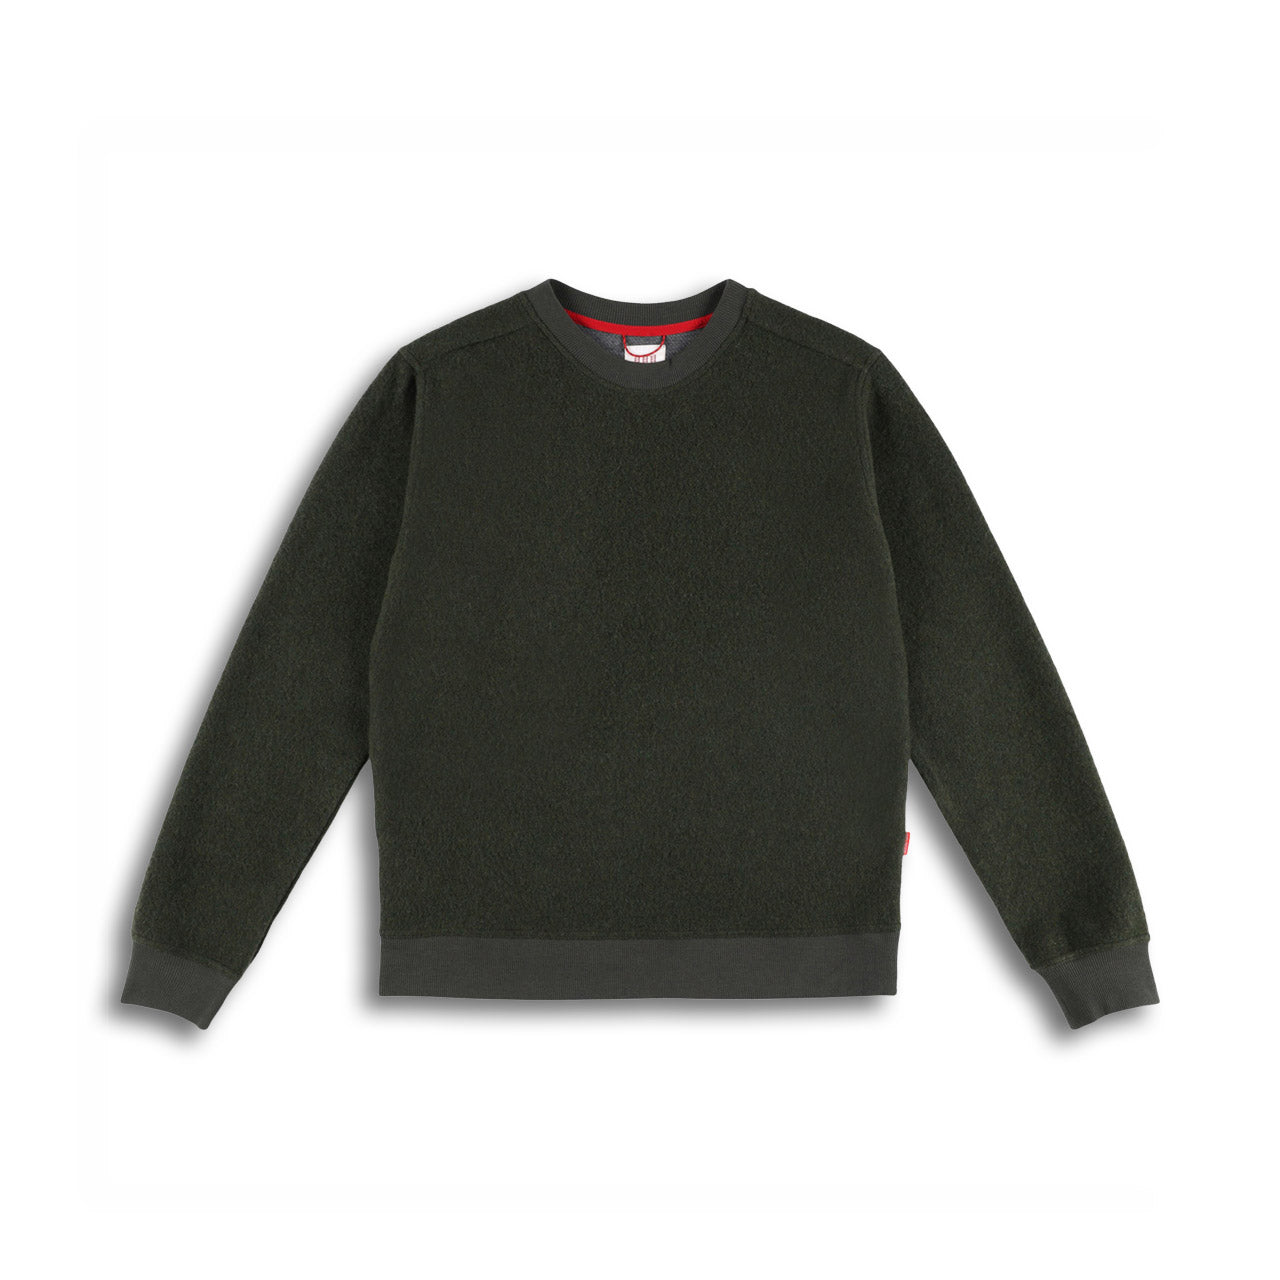 Topo Designs Global Wool Sweater